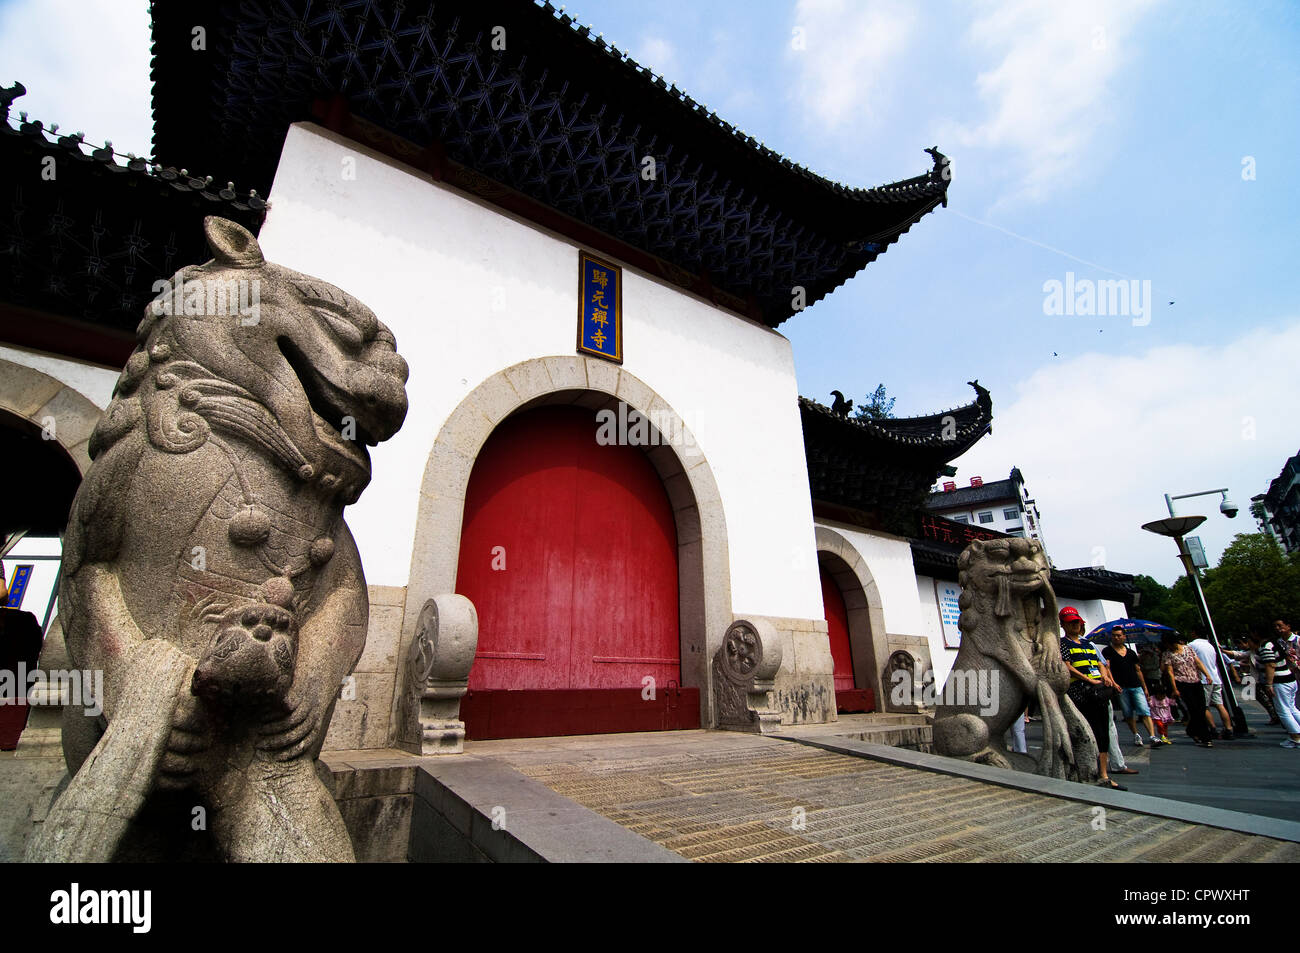 The beautiful Guiyuan temple in Hanyang, Wuhan. Stock Photo